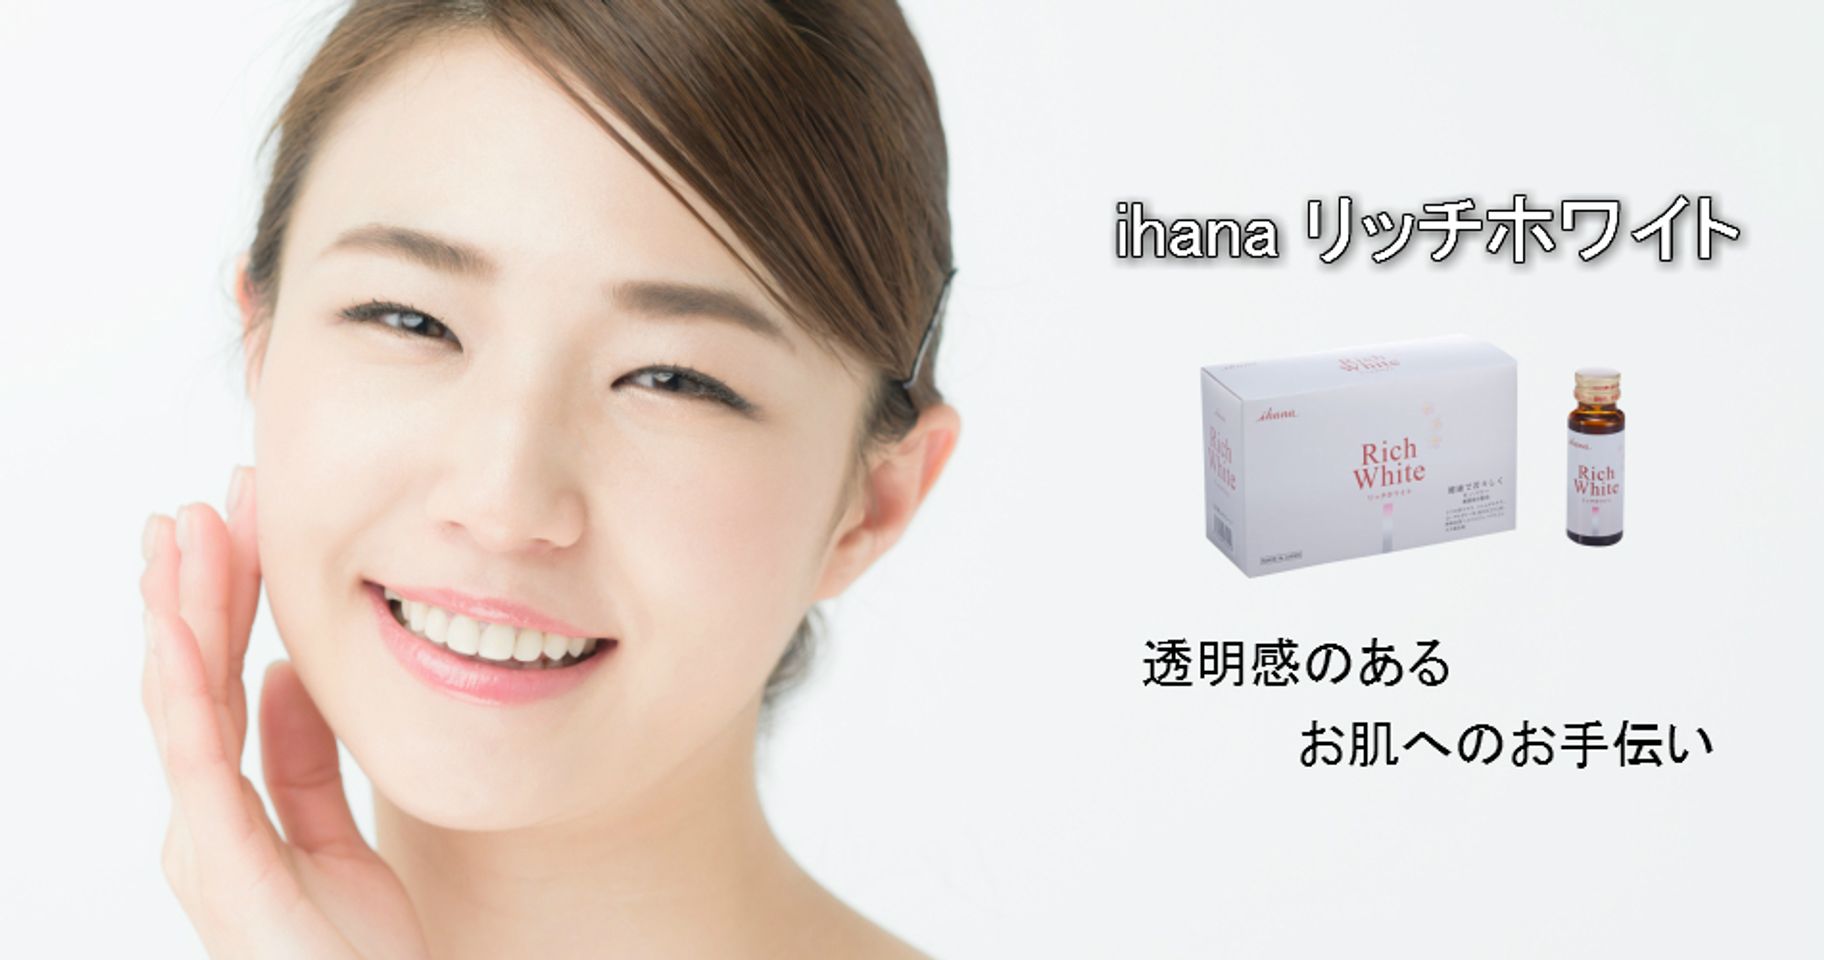 Collagen White Ihana chính hãng Nhật Bản là một trong những sản phẩm nổi bật được rất nhiều người ưa chuộng sử dụng